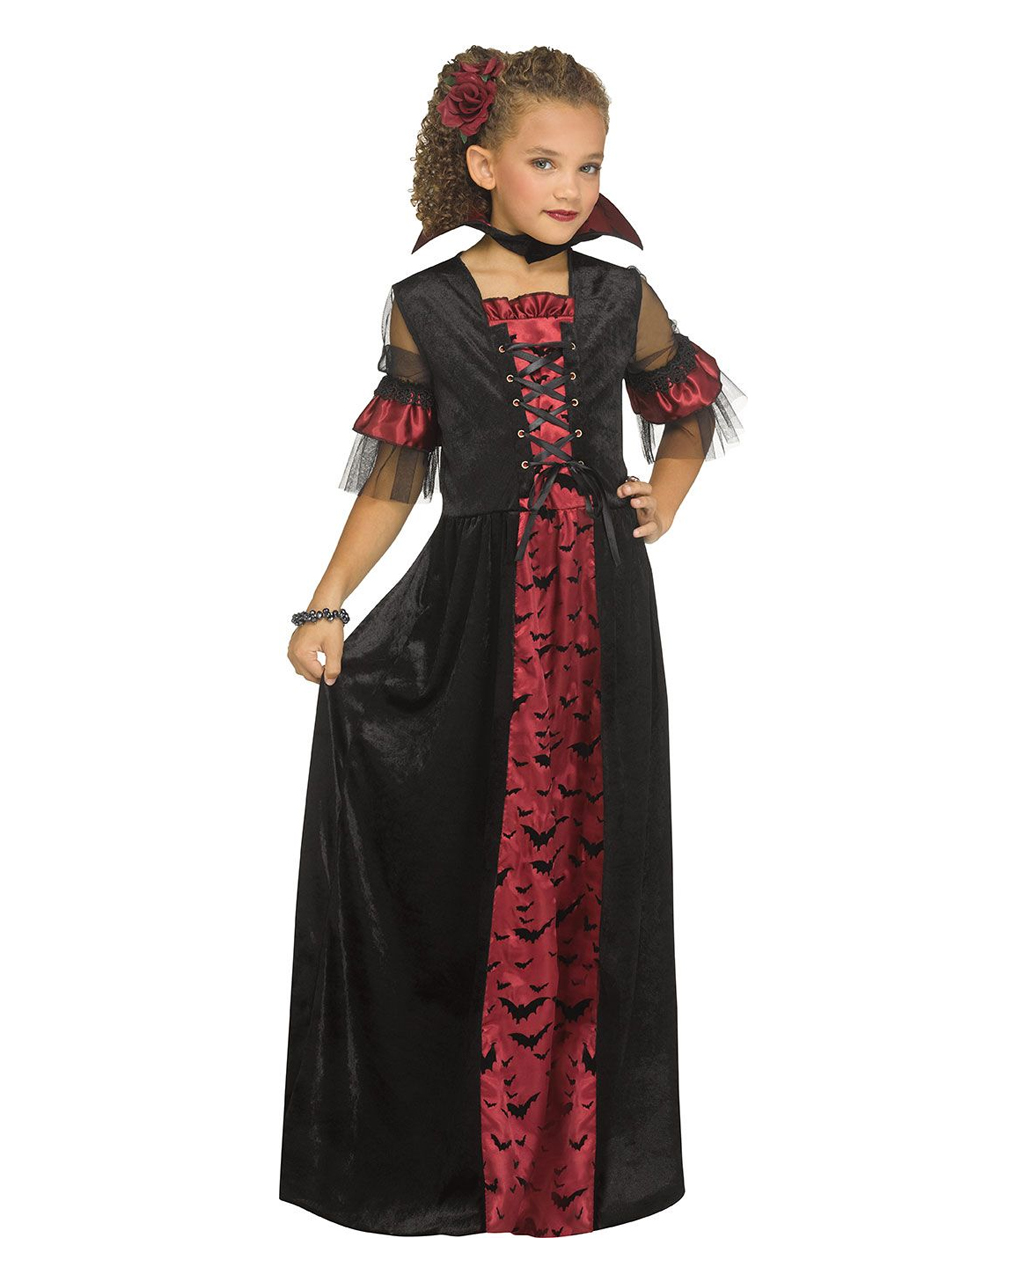 https://inst-0.cdn.shockers.de/ku_cdn/out/pictures/master/product/1/viktorianisches-vampir-kinderkostuem-victorian-vampiress-child-costume-blutsauger-verkleidung-halloween-54226.jpg